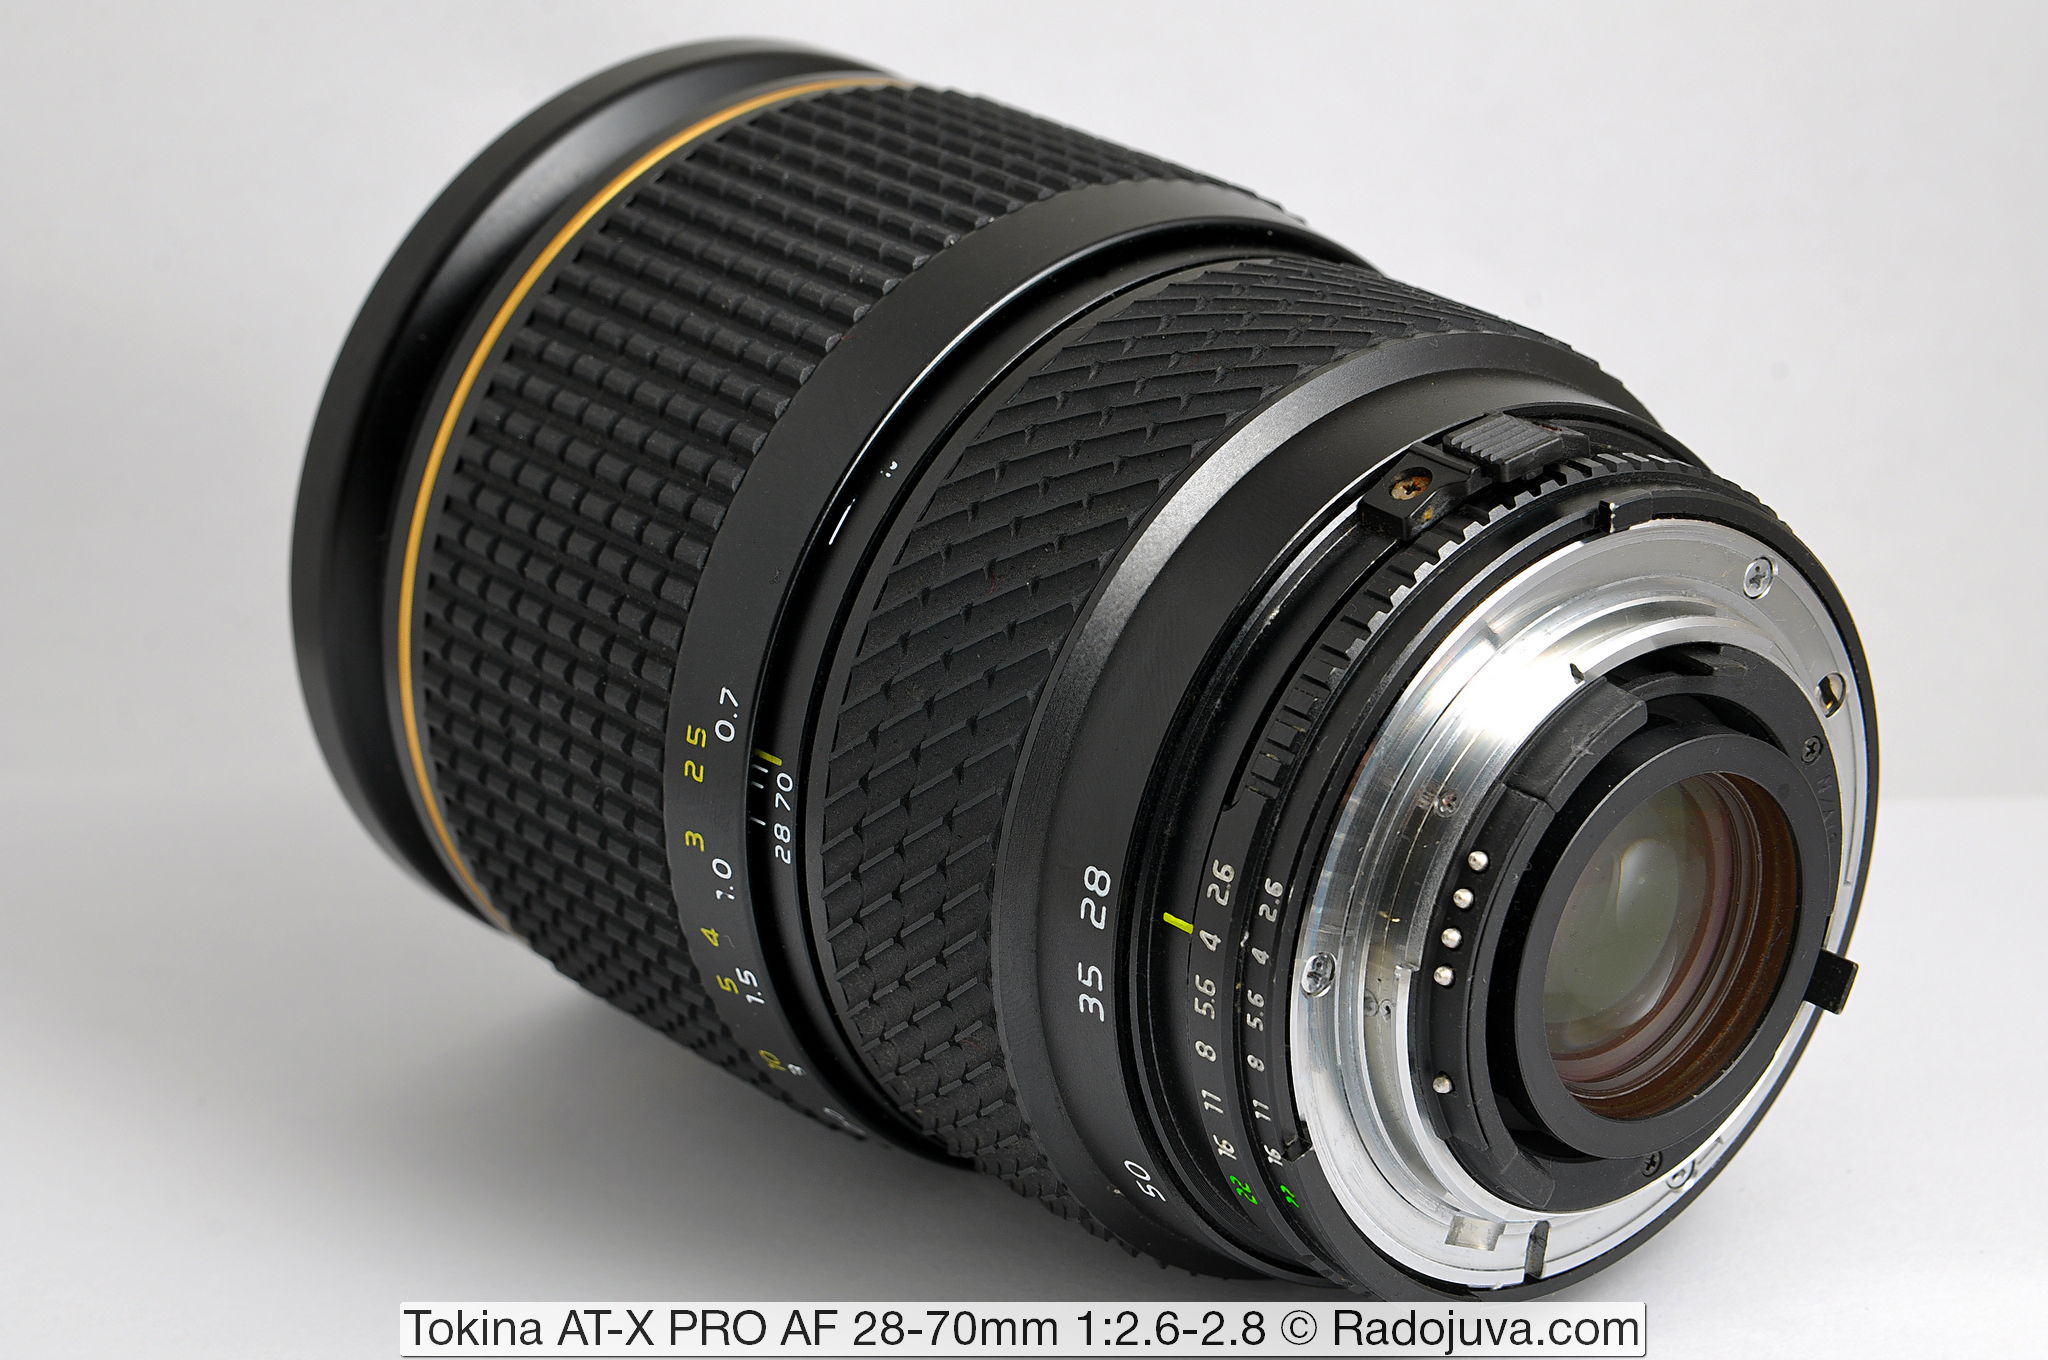 Tokina AT-X PRO AF 28-70mm 1:2.6-2.8 (Tokina AT-X 270 AF PRO)